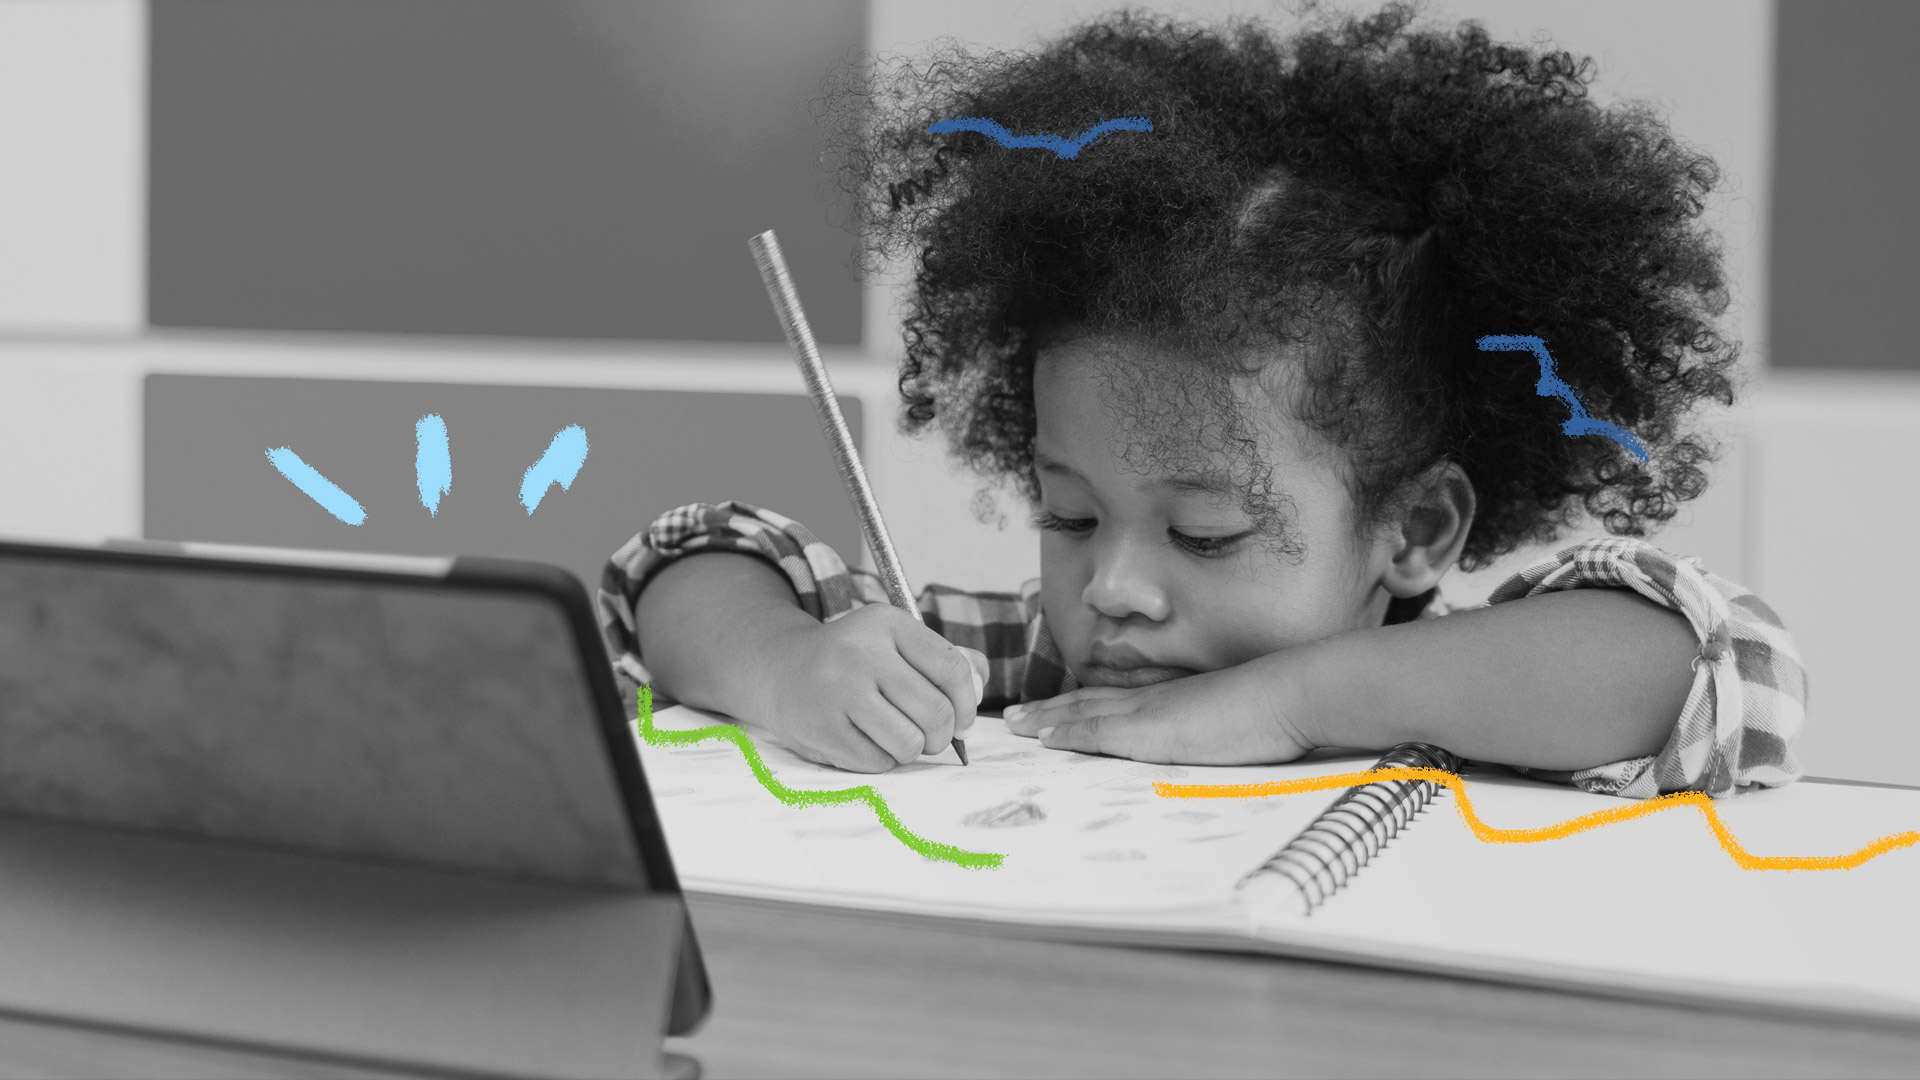 Arte e educação para crianças: uma menina negra se debruça sobre um caderno onde desenha seguindo algum curso ou vídeo por um tablet apoiado na mesa em frente a ela